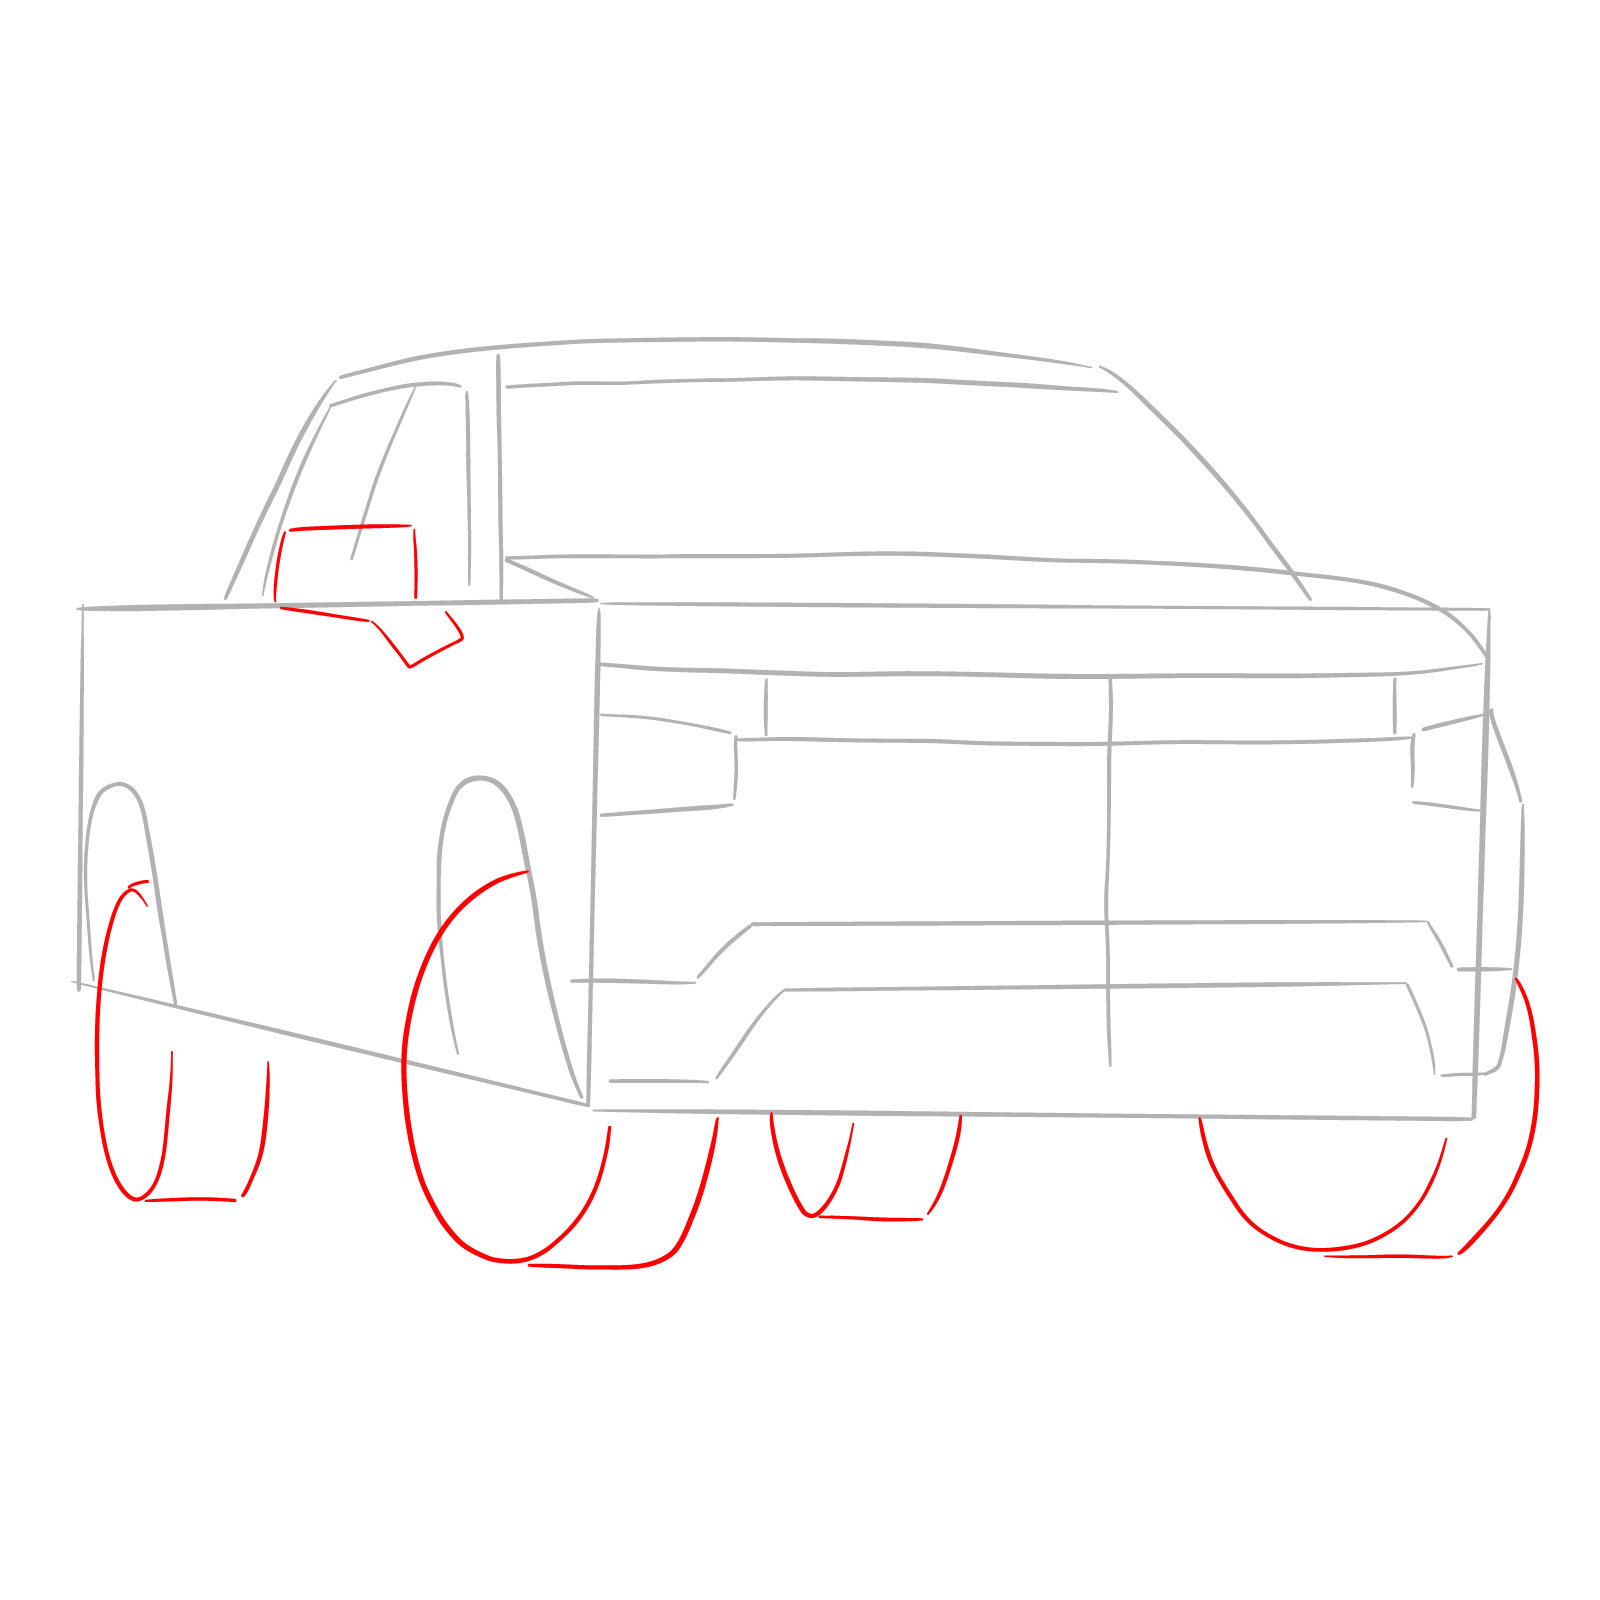 How to draw a 2022 Chevy Silverado - step 03